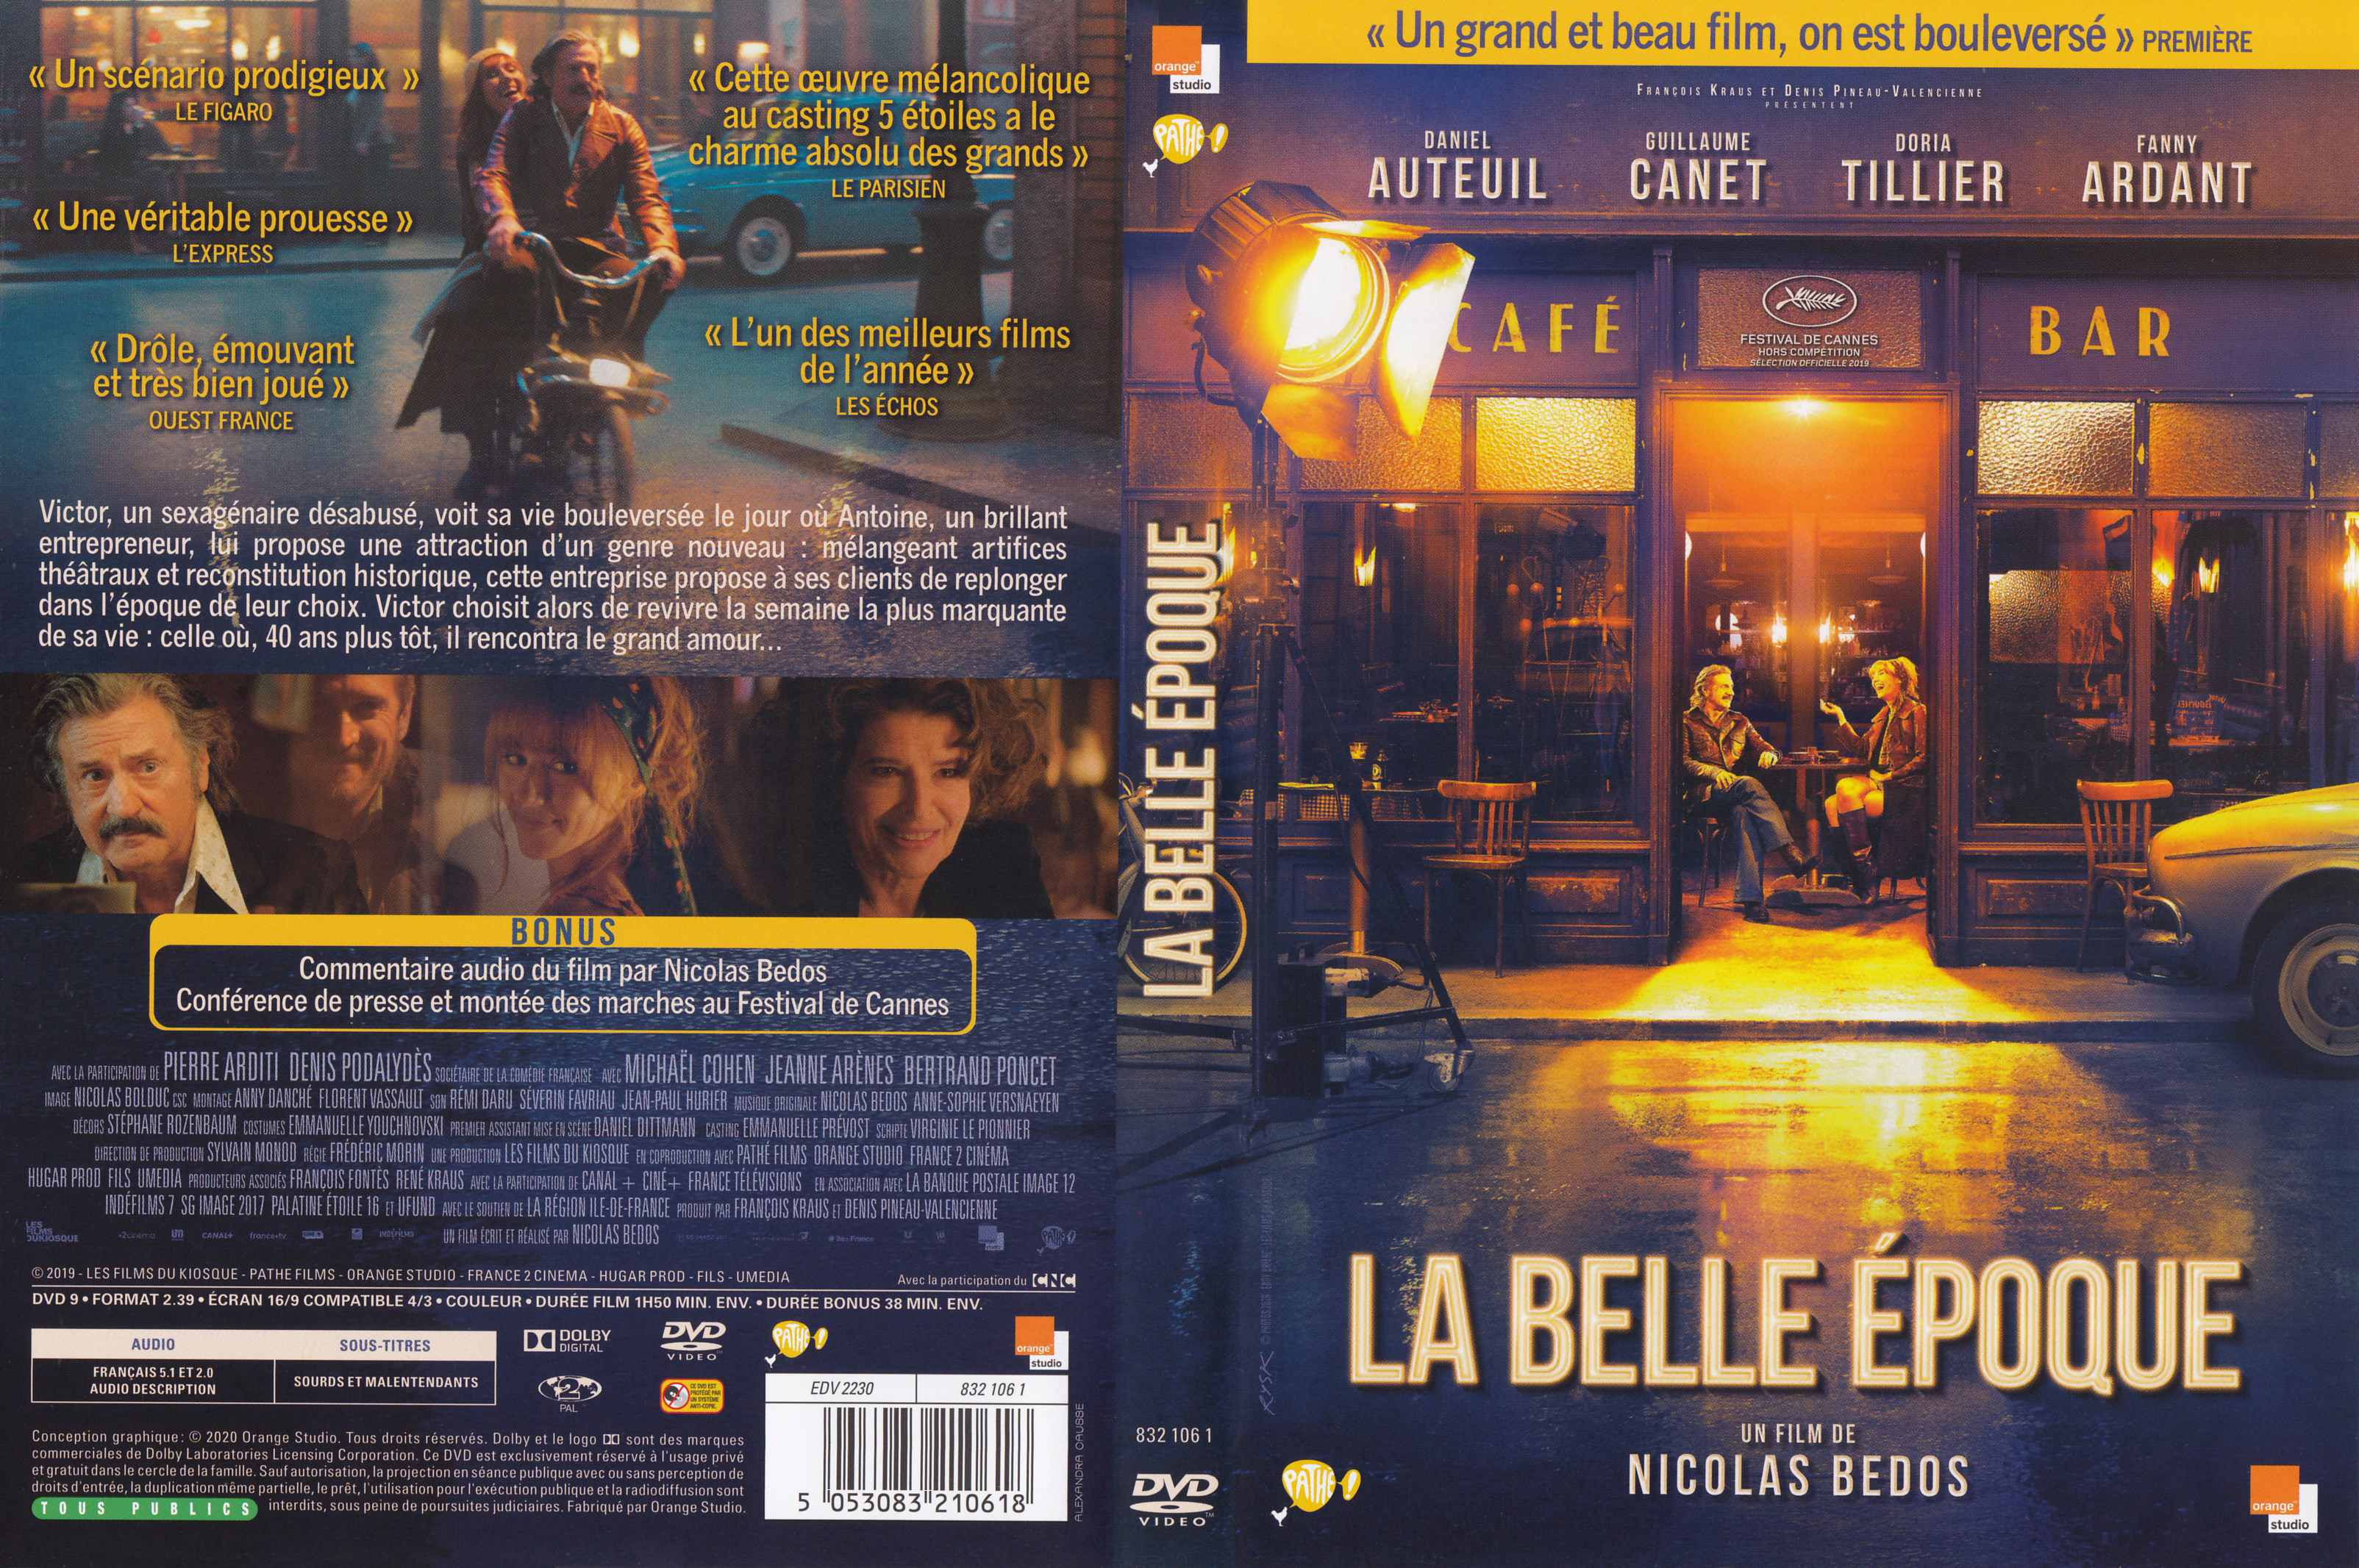 Jaquette DVD La belle poque